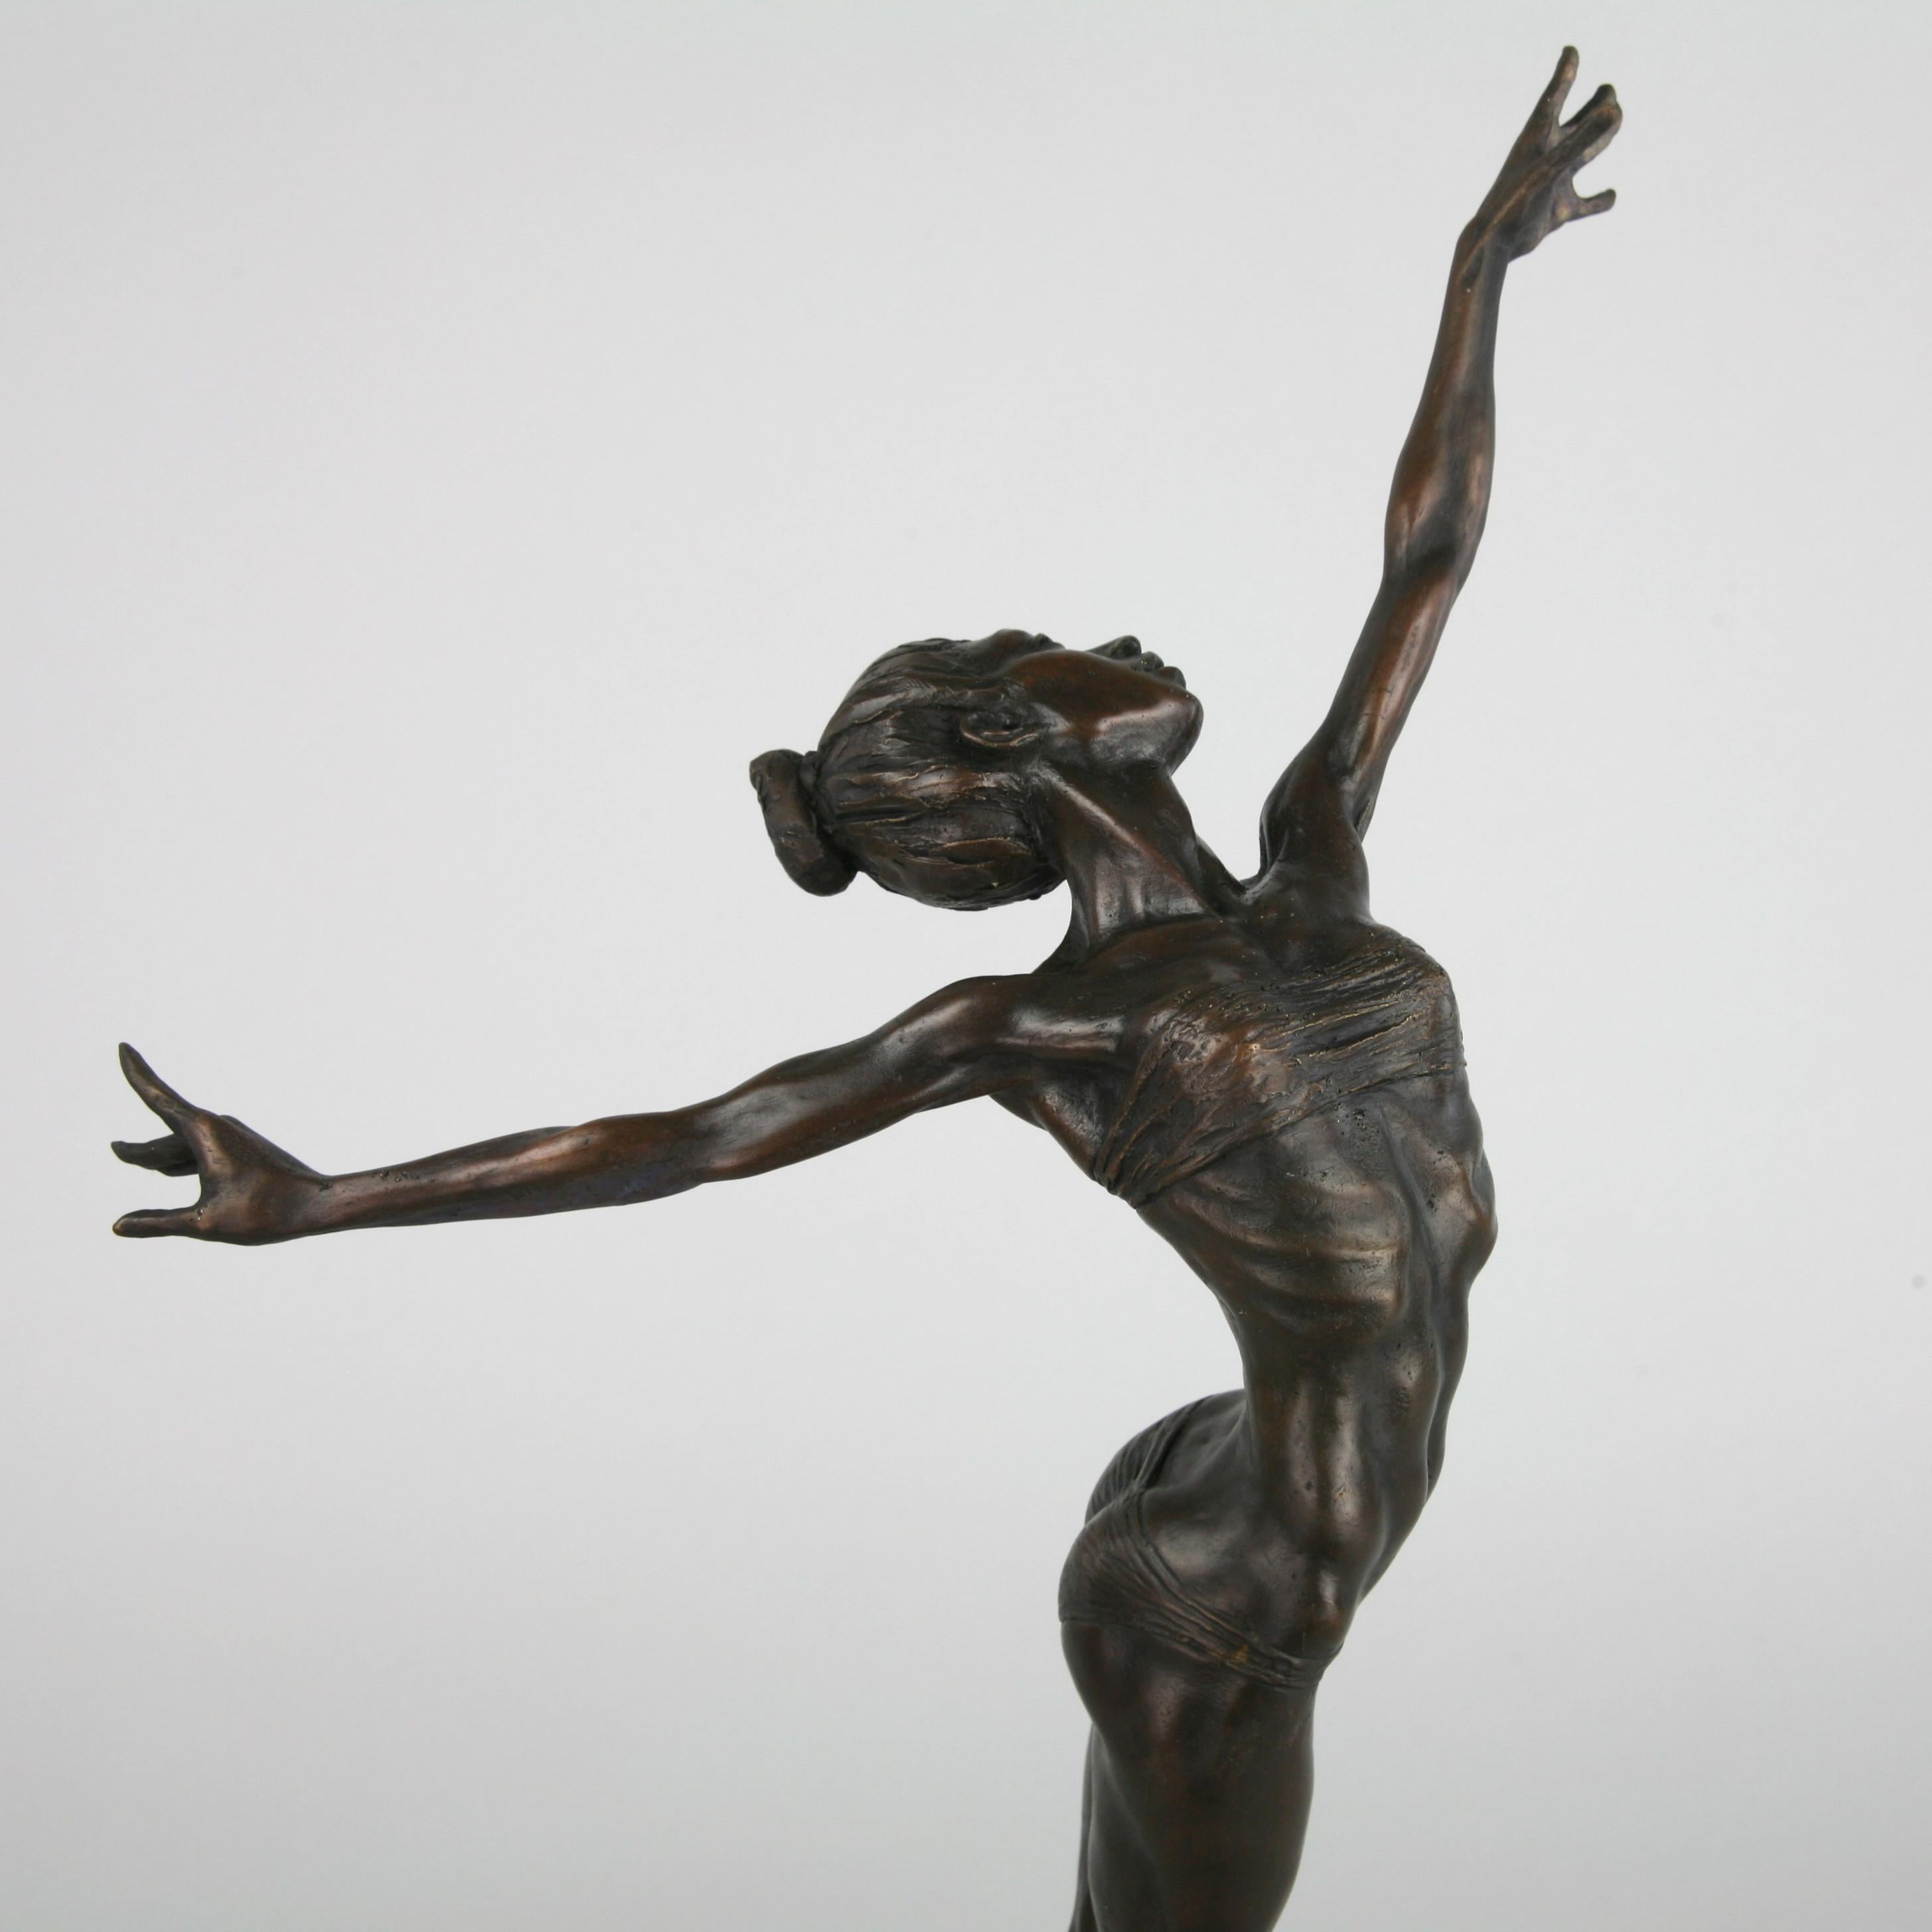 Pole Dancer-original nude figurative bronze sculpture-artwork-contemporary Art For Sale 8